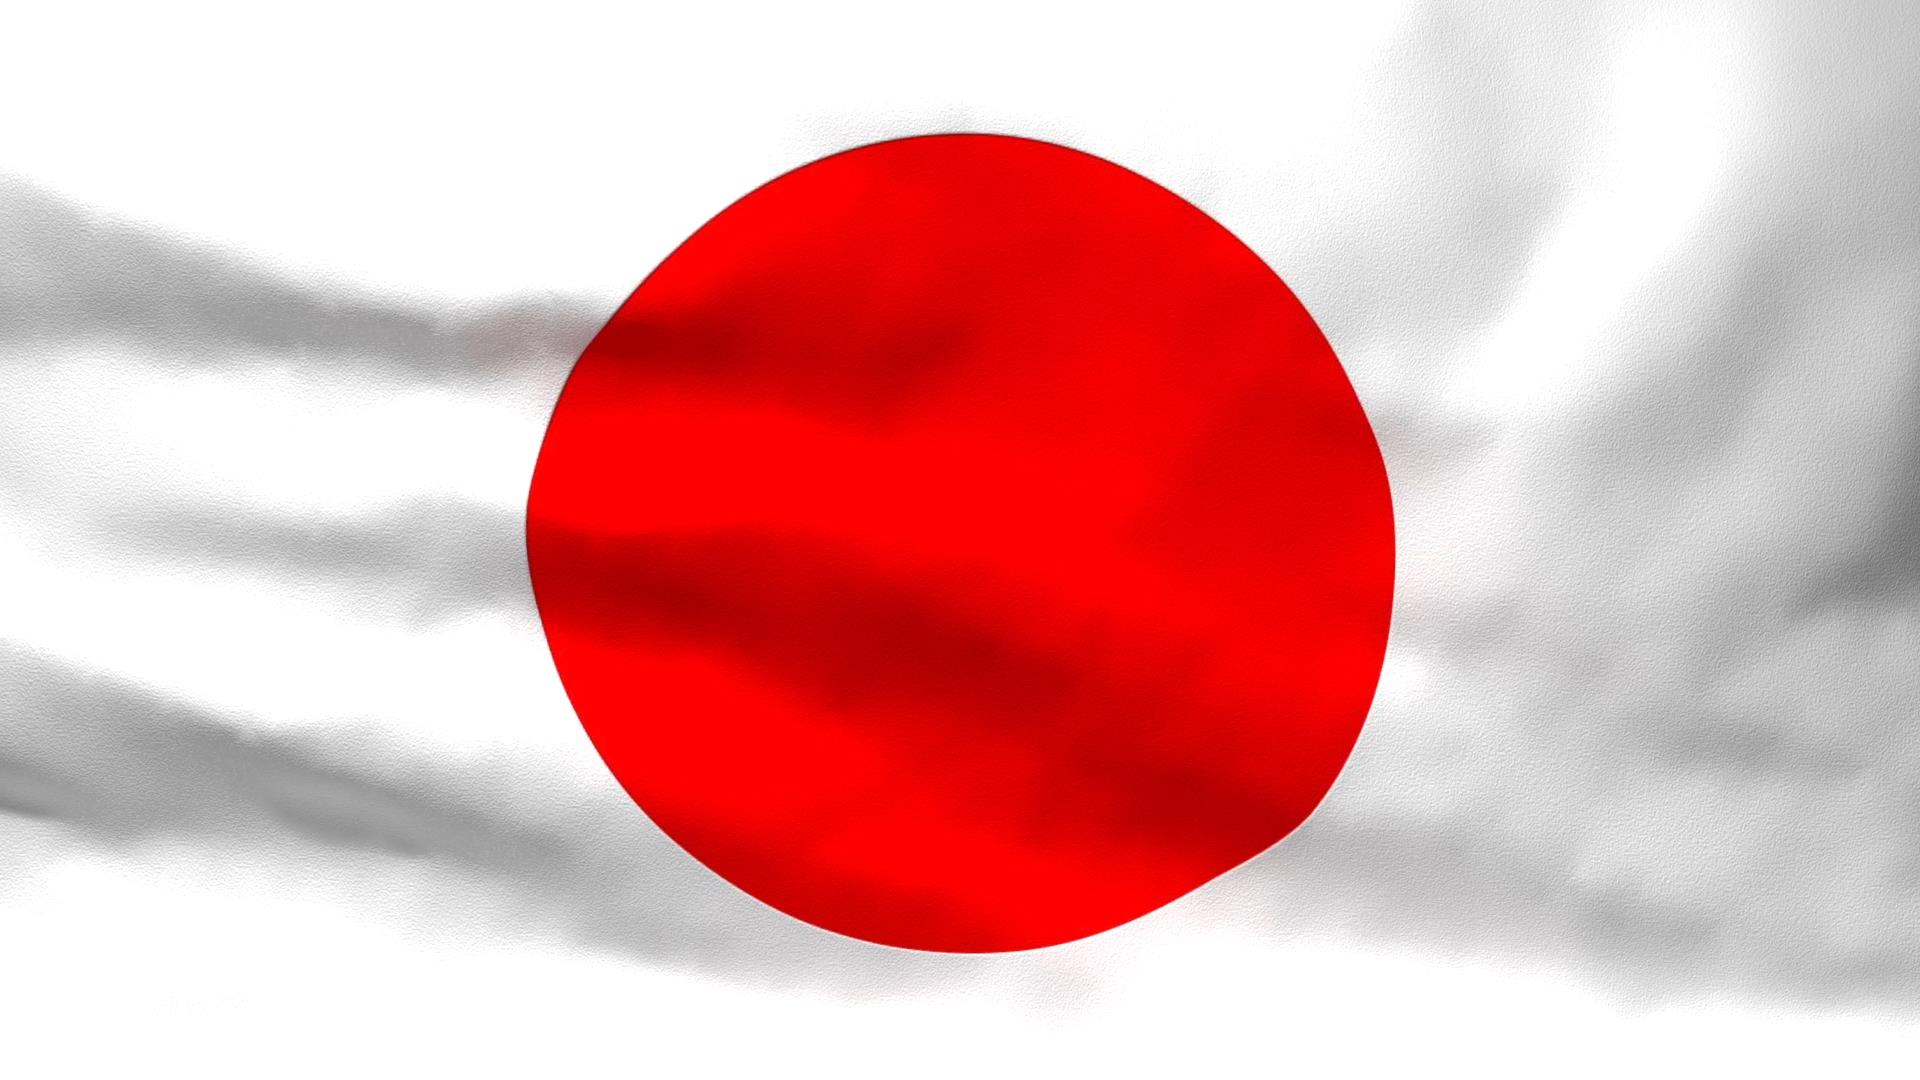 Lá cờ Nhật Bản: Lá cờ Nhật Bản đầy tính nghĩa là biểu tượng của những giá trị truyền thống trong đất nước này như lòng tin, lòng trung thành, lòng biết ơn và lòng tự hào. Hãy xem hình ảnh liên quan đến từ khóa này để hiểu thêm về ý nghĩa sâu sắc của lá cờ Nhật Bản và tìm hiểu về lịch sử và văn hóa đa dạng của đất nước này.